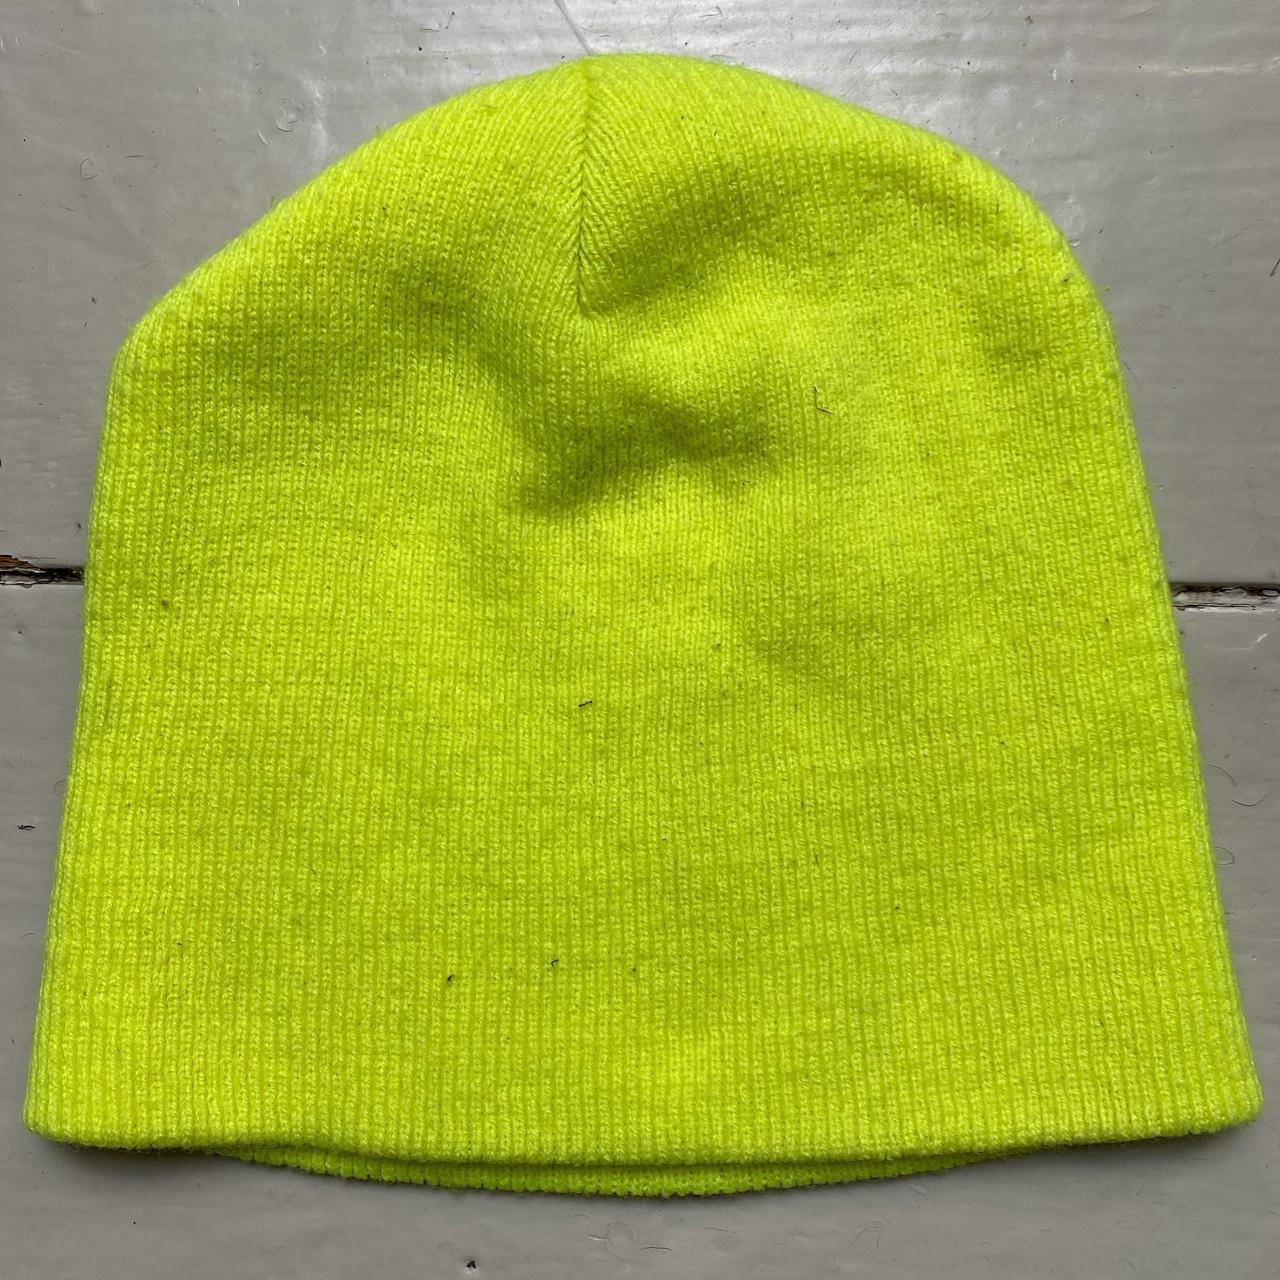 Carharrt Neon Yellow Beanie Hat